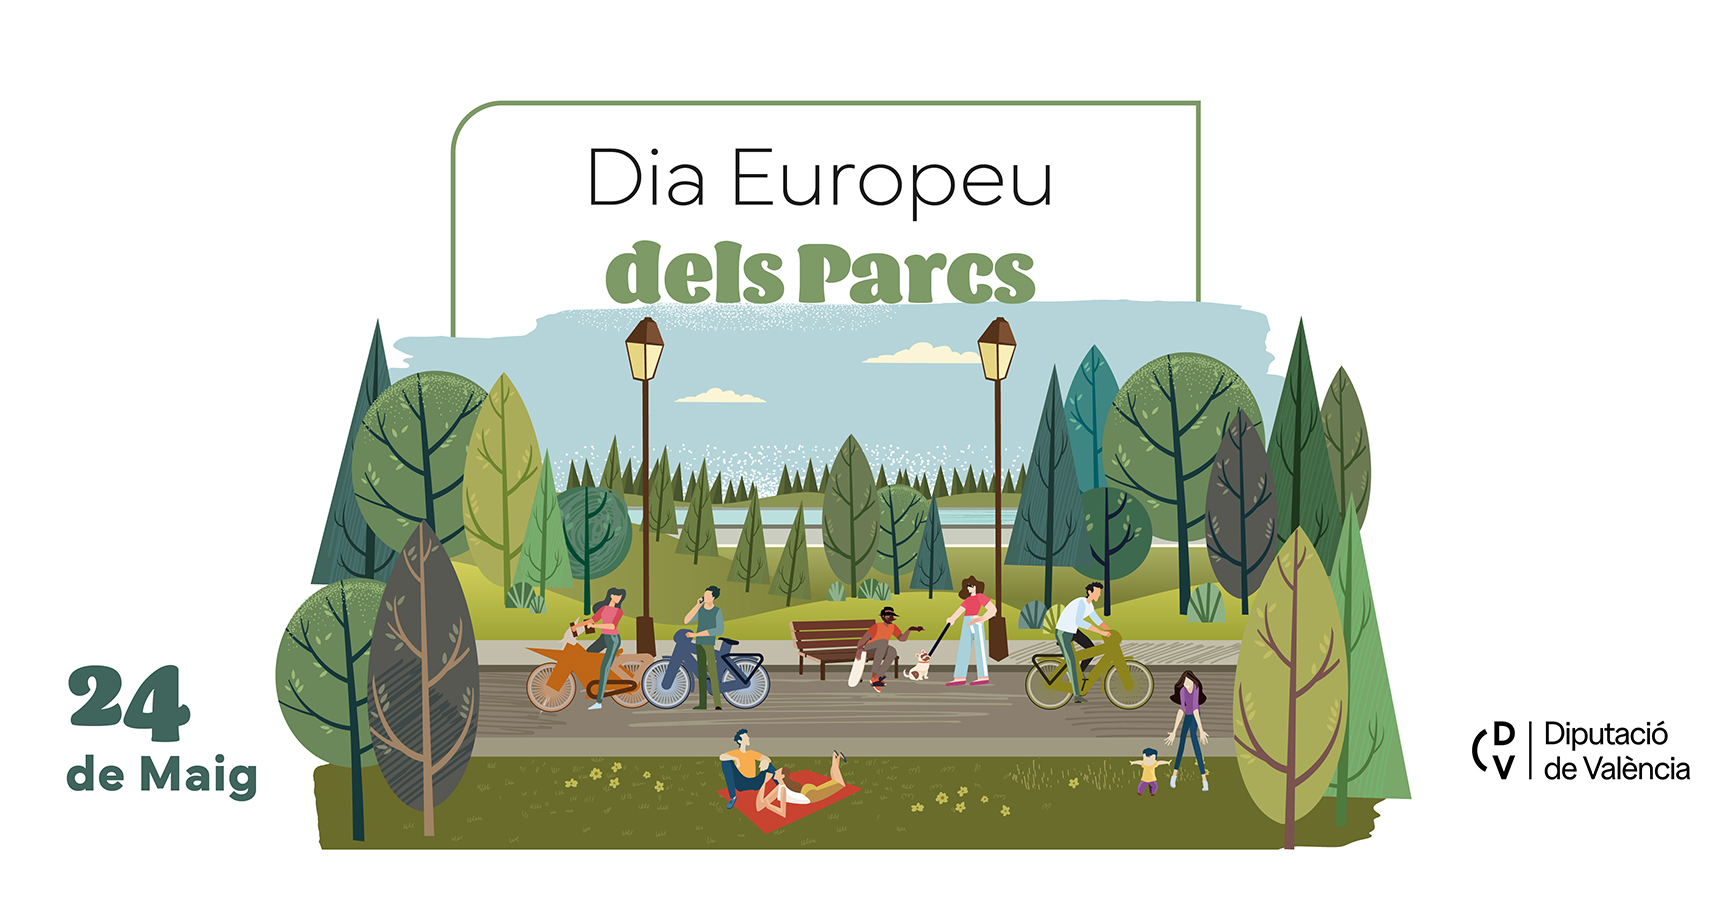 Dia Europeu dels parcs